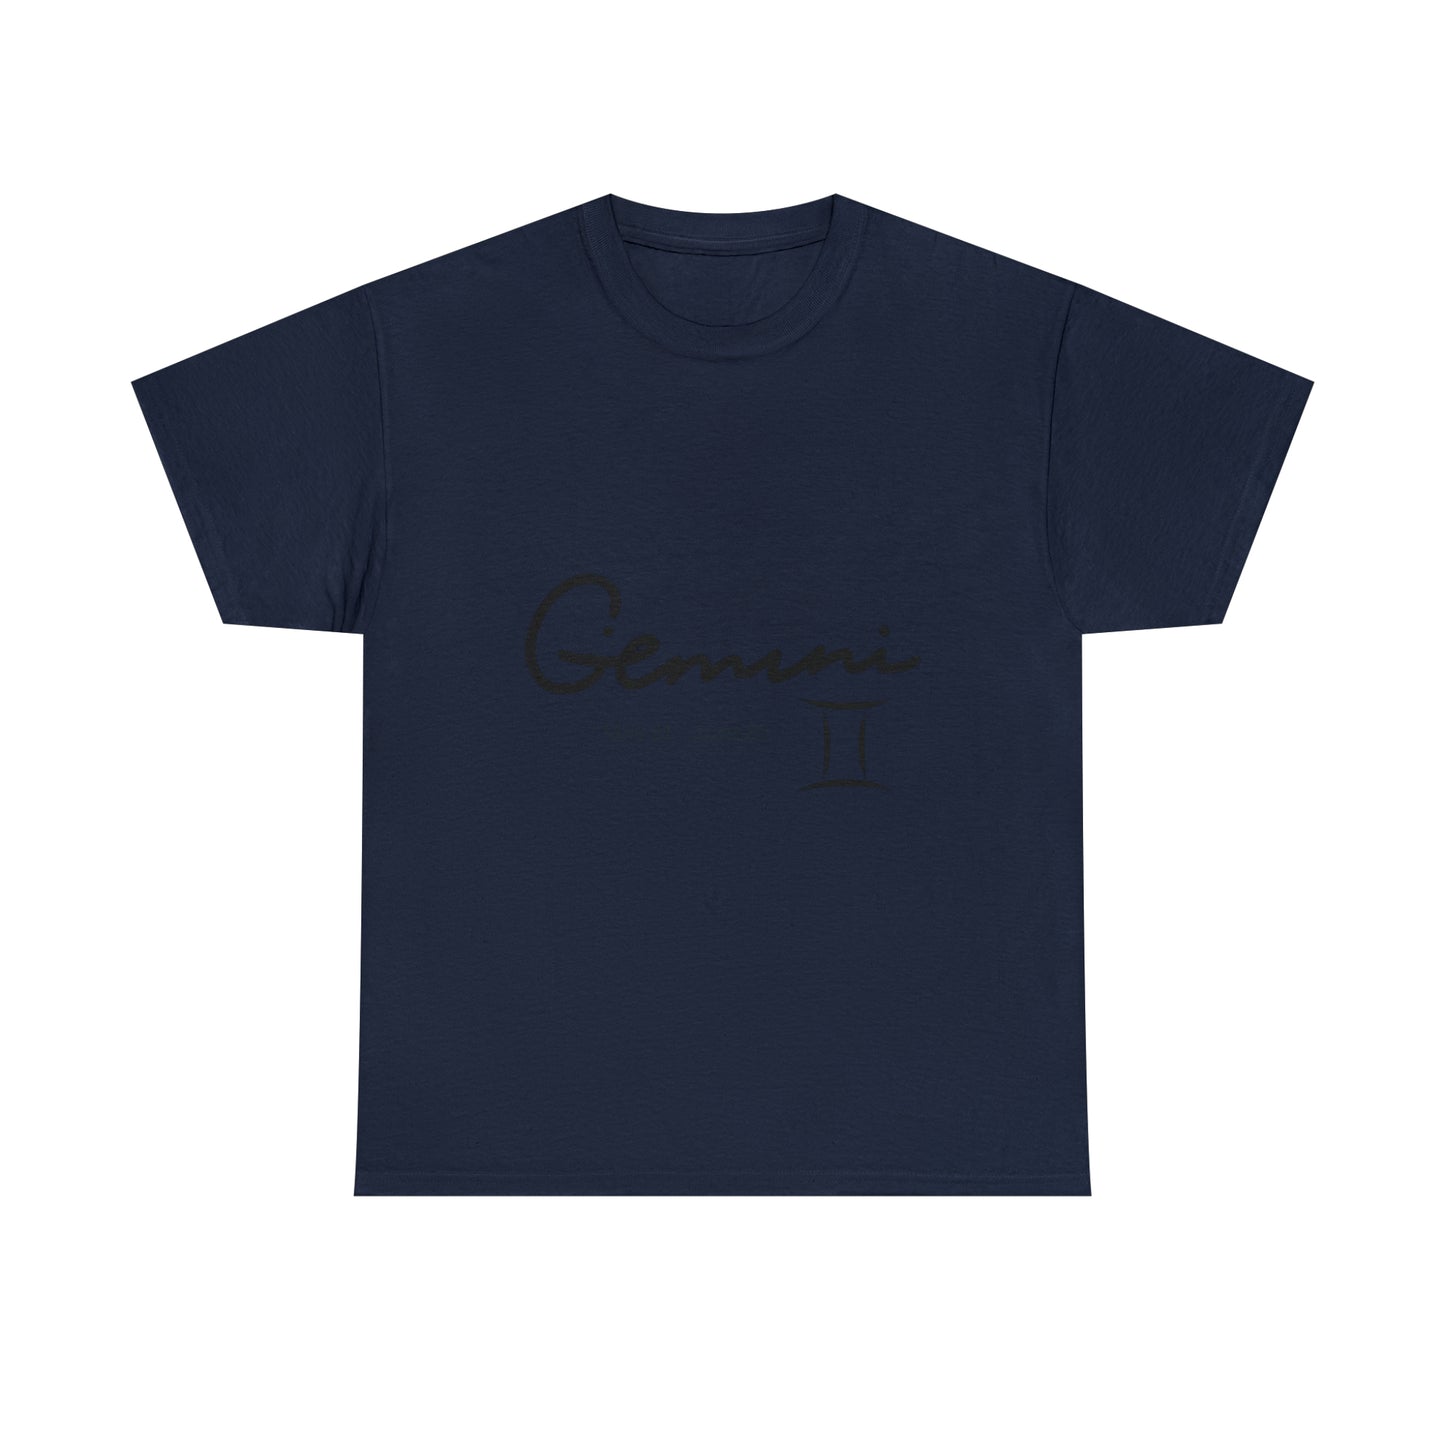 Gemini T-shirt - 5